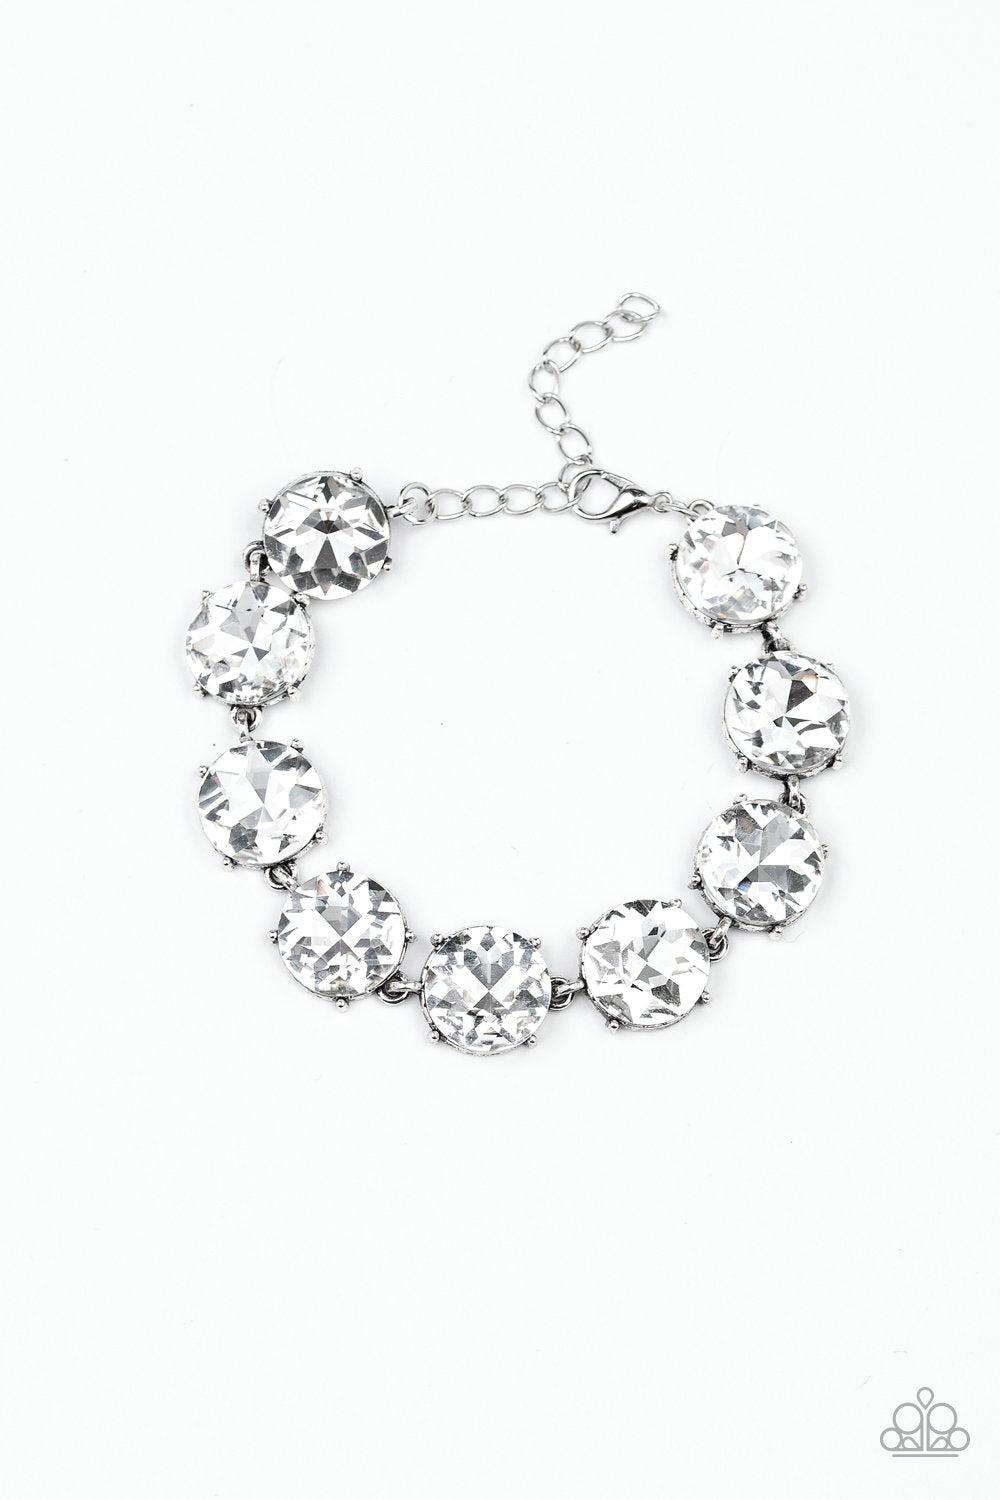 Fabulously Flashy White Rhinestone Bracelet - Paparazzi Accessories-CarasShop.com - $5 Jewelry by Cara Jewels